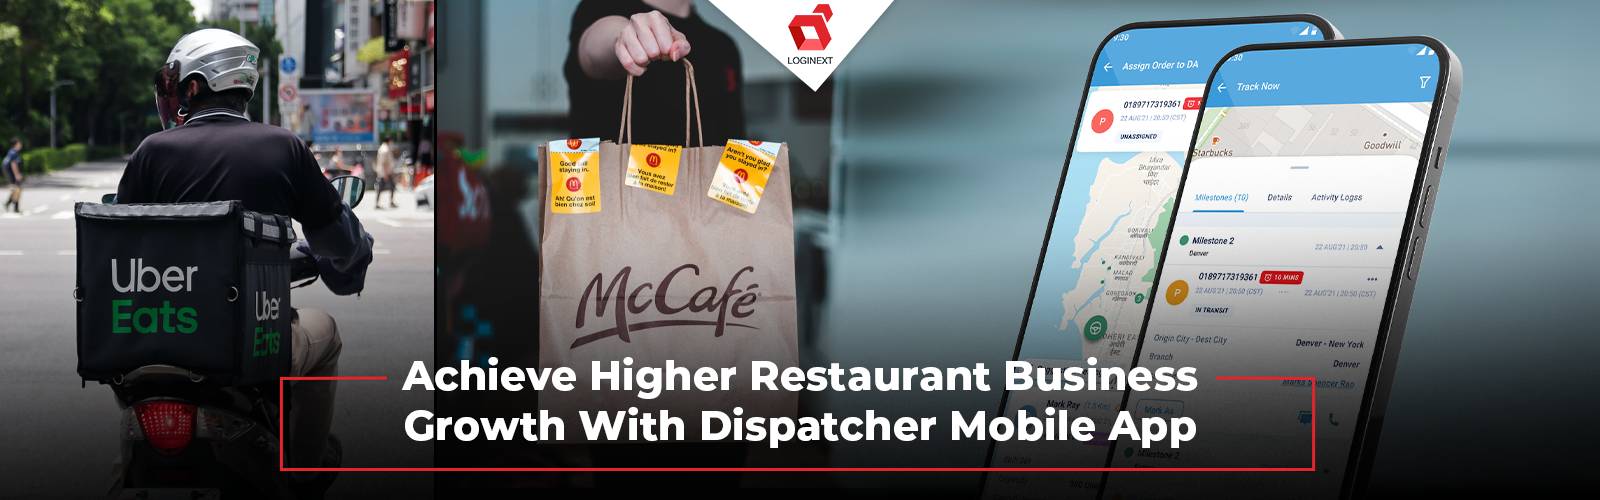 השג צמיחה עסקית משמעותית במסעדות עם אפליקציית Dispatcher Mobile